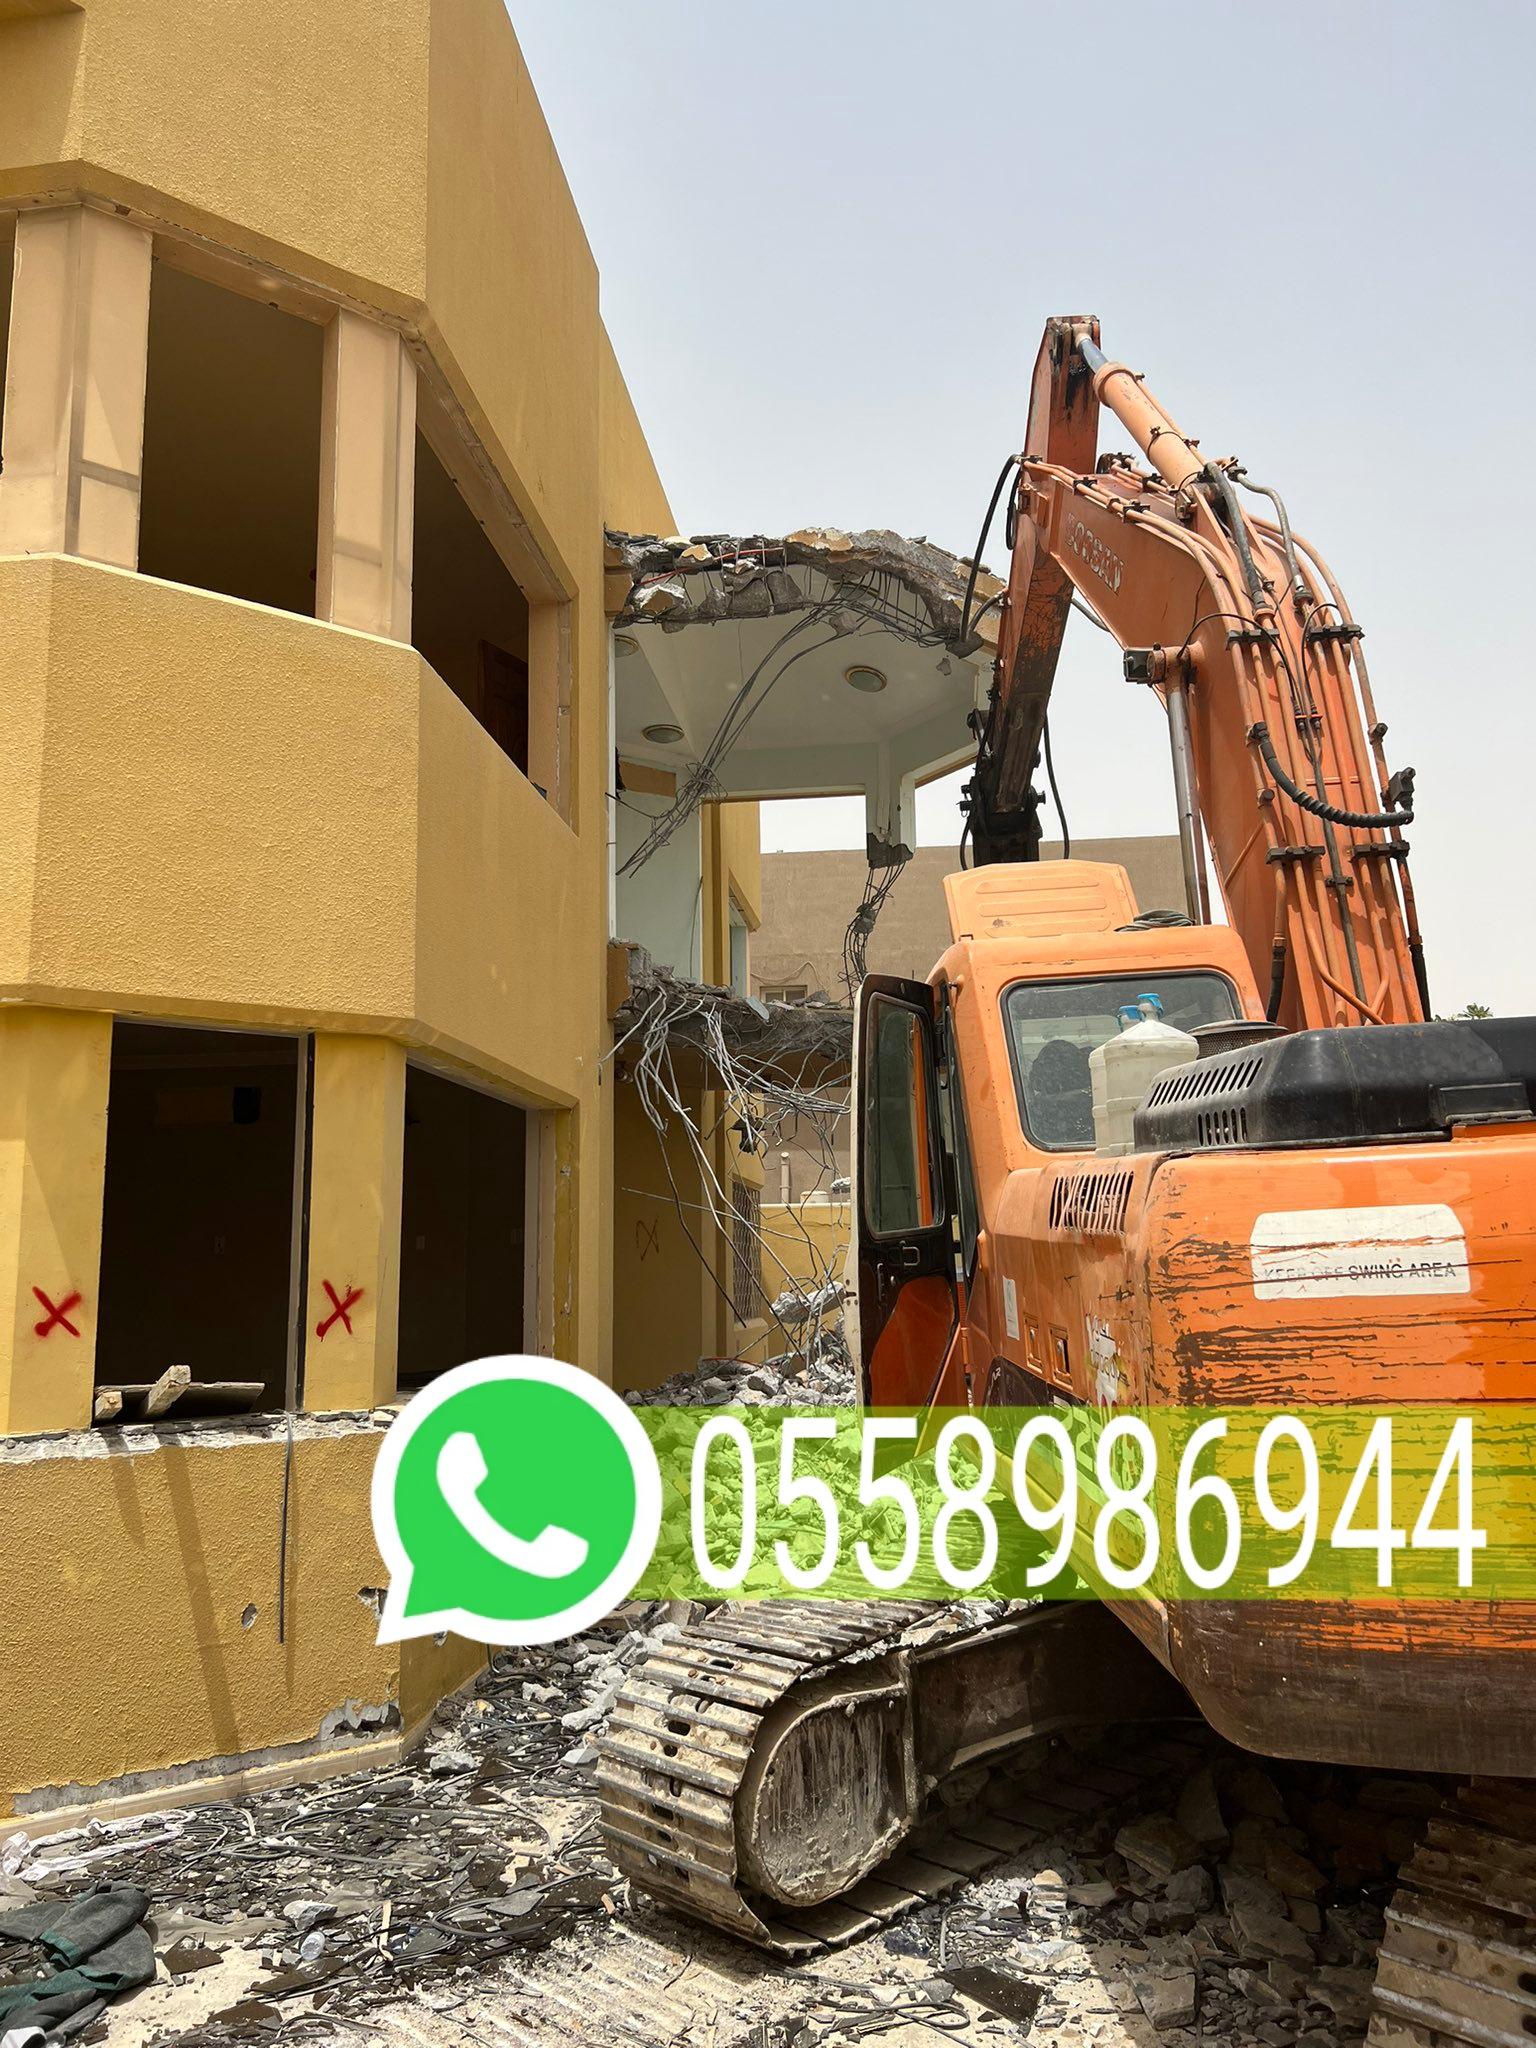 تكسير جدران وبلاط وتوسعة مباني مكة 0558986944 703691074